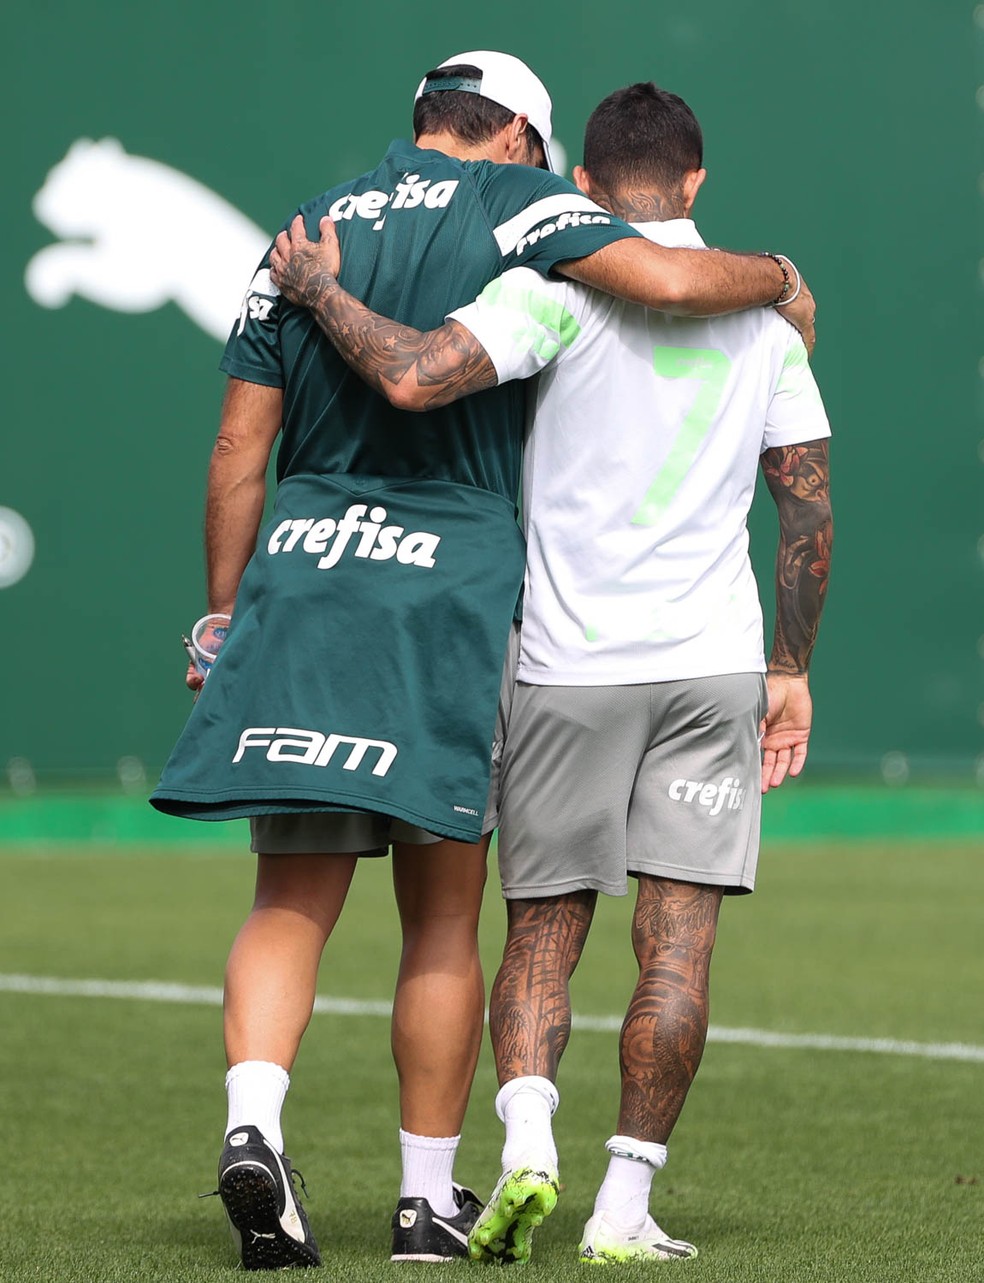 GloboEsporte.com > Futebol > Palmeiras - NOTÍCIAS - Roque Júnior é a única  dúvida do Palmeiras para o duelo contra o Grêmio